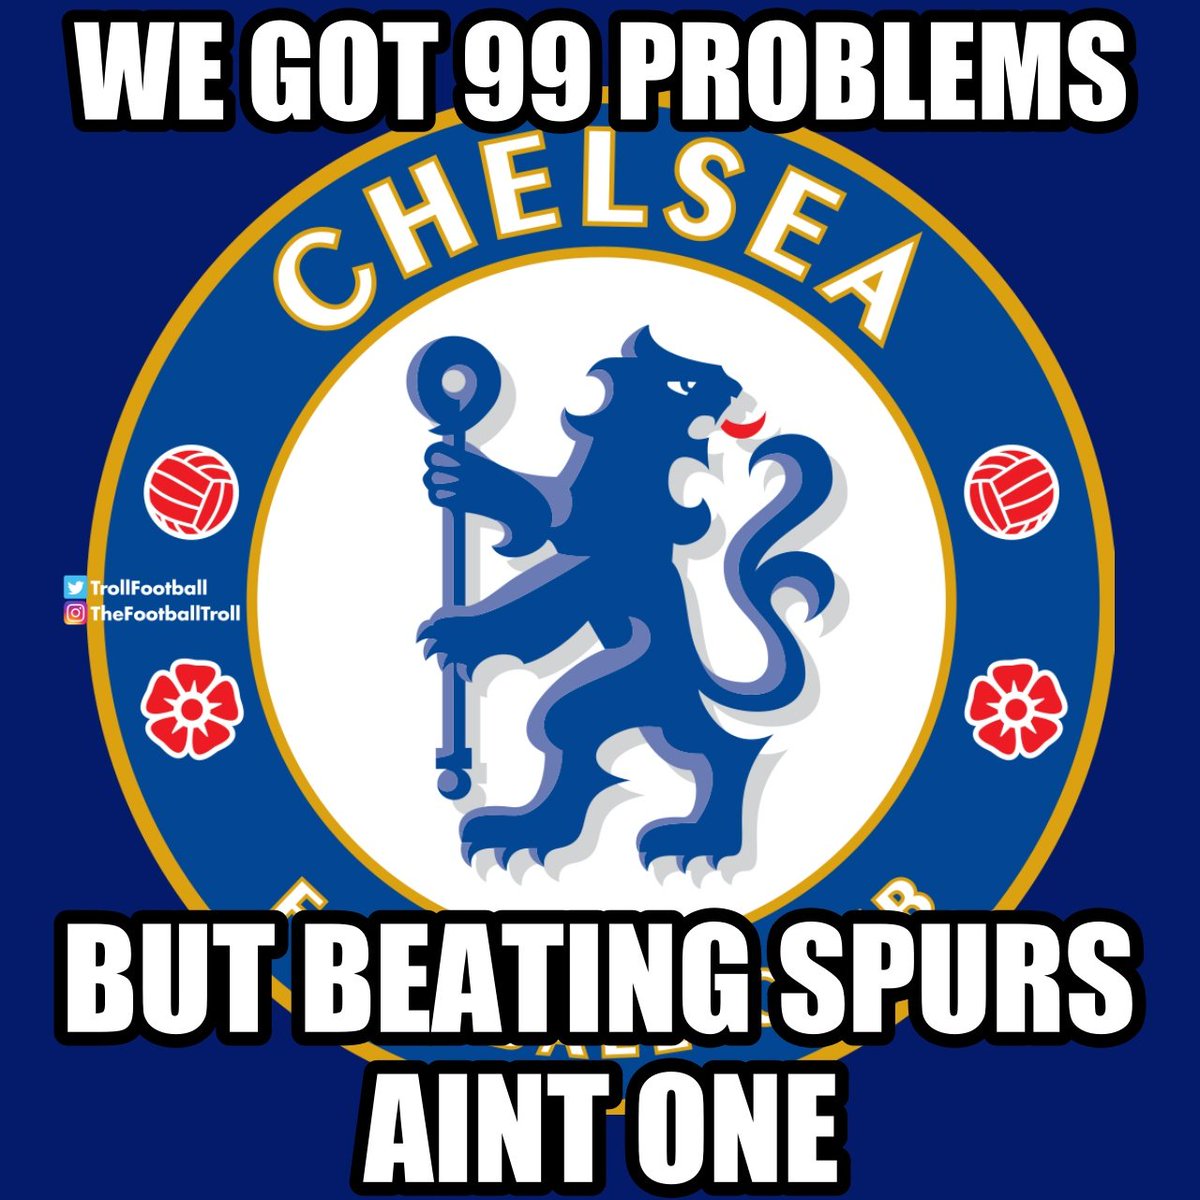 Chelsea owns Tottenham